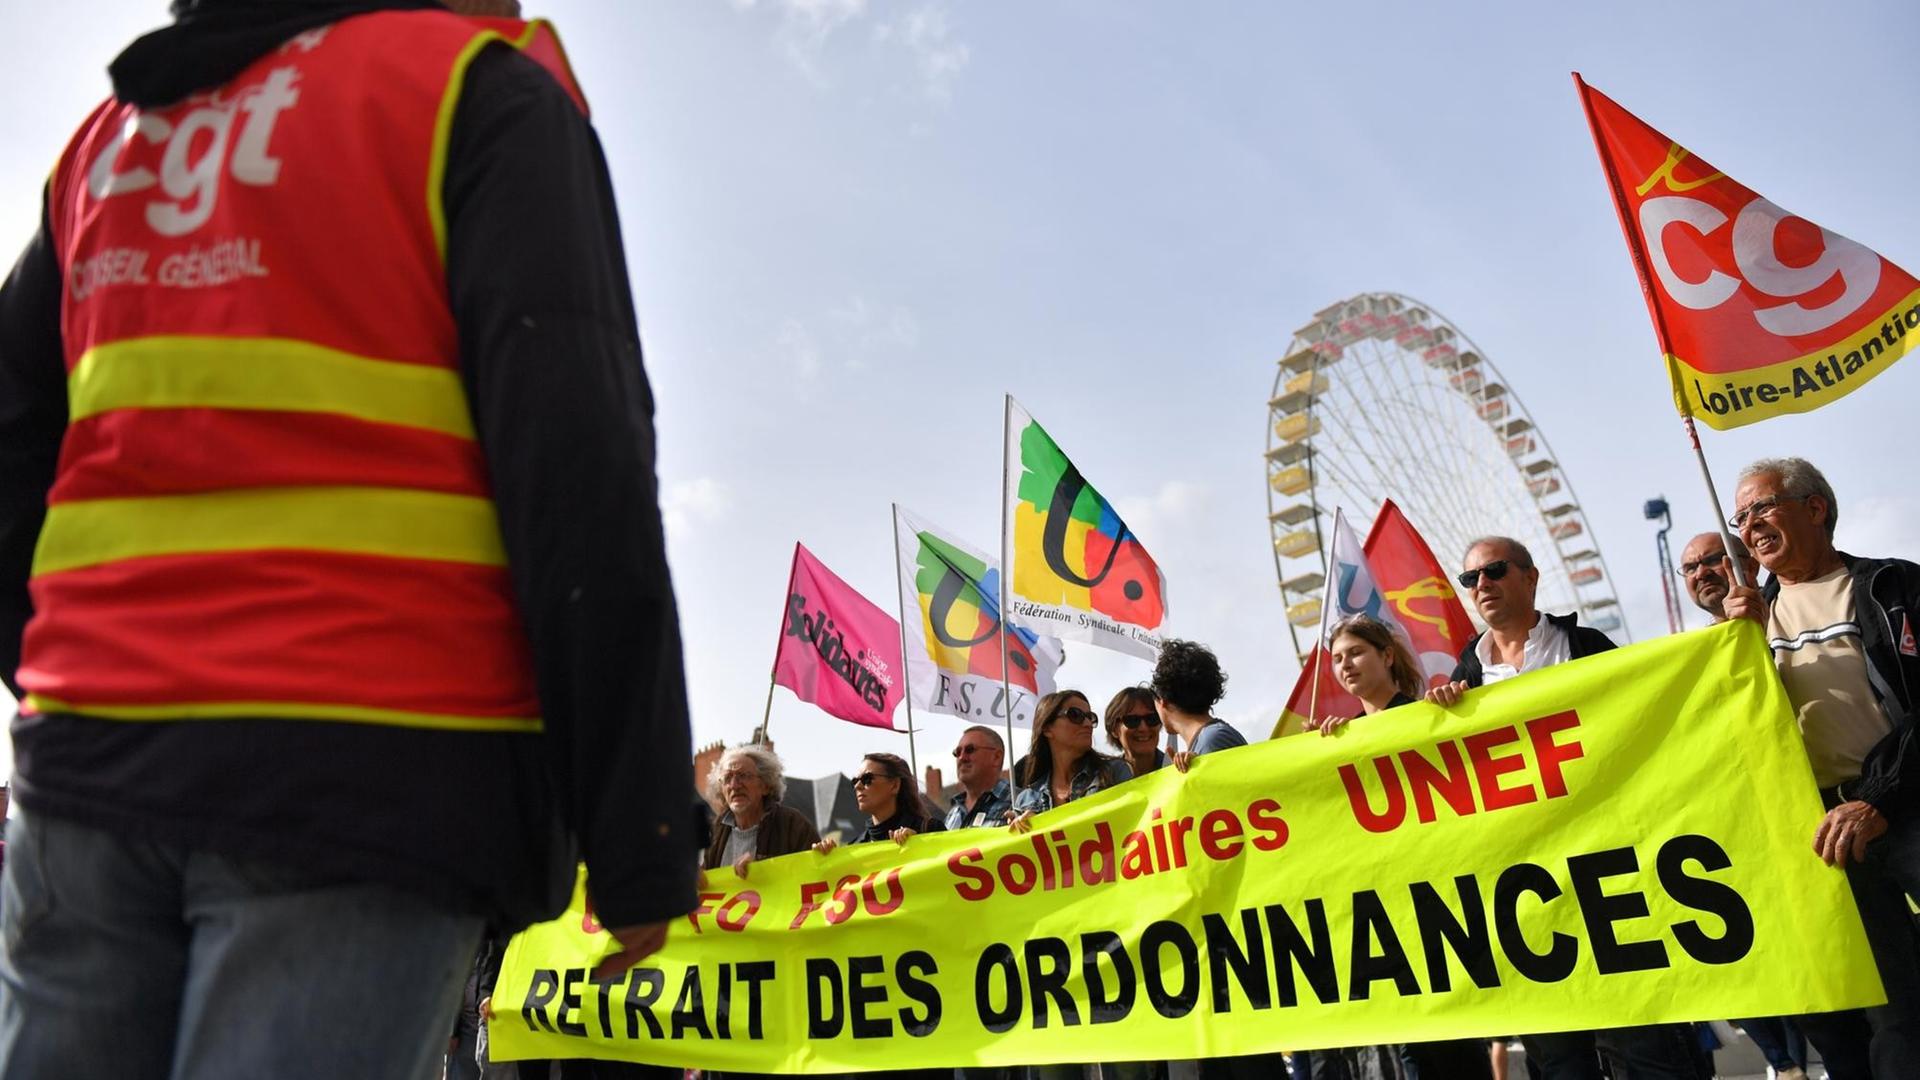 Anhänger der Gewerkschaft CGT demonstrieren in Nantes gegen die Arbeitsmarktreform.